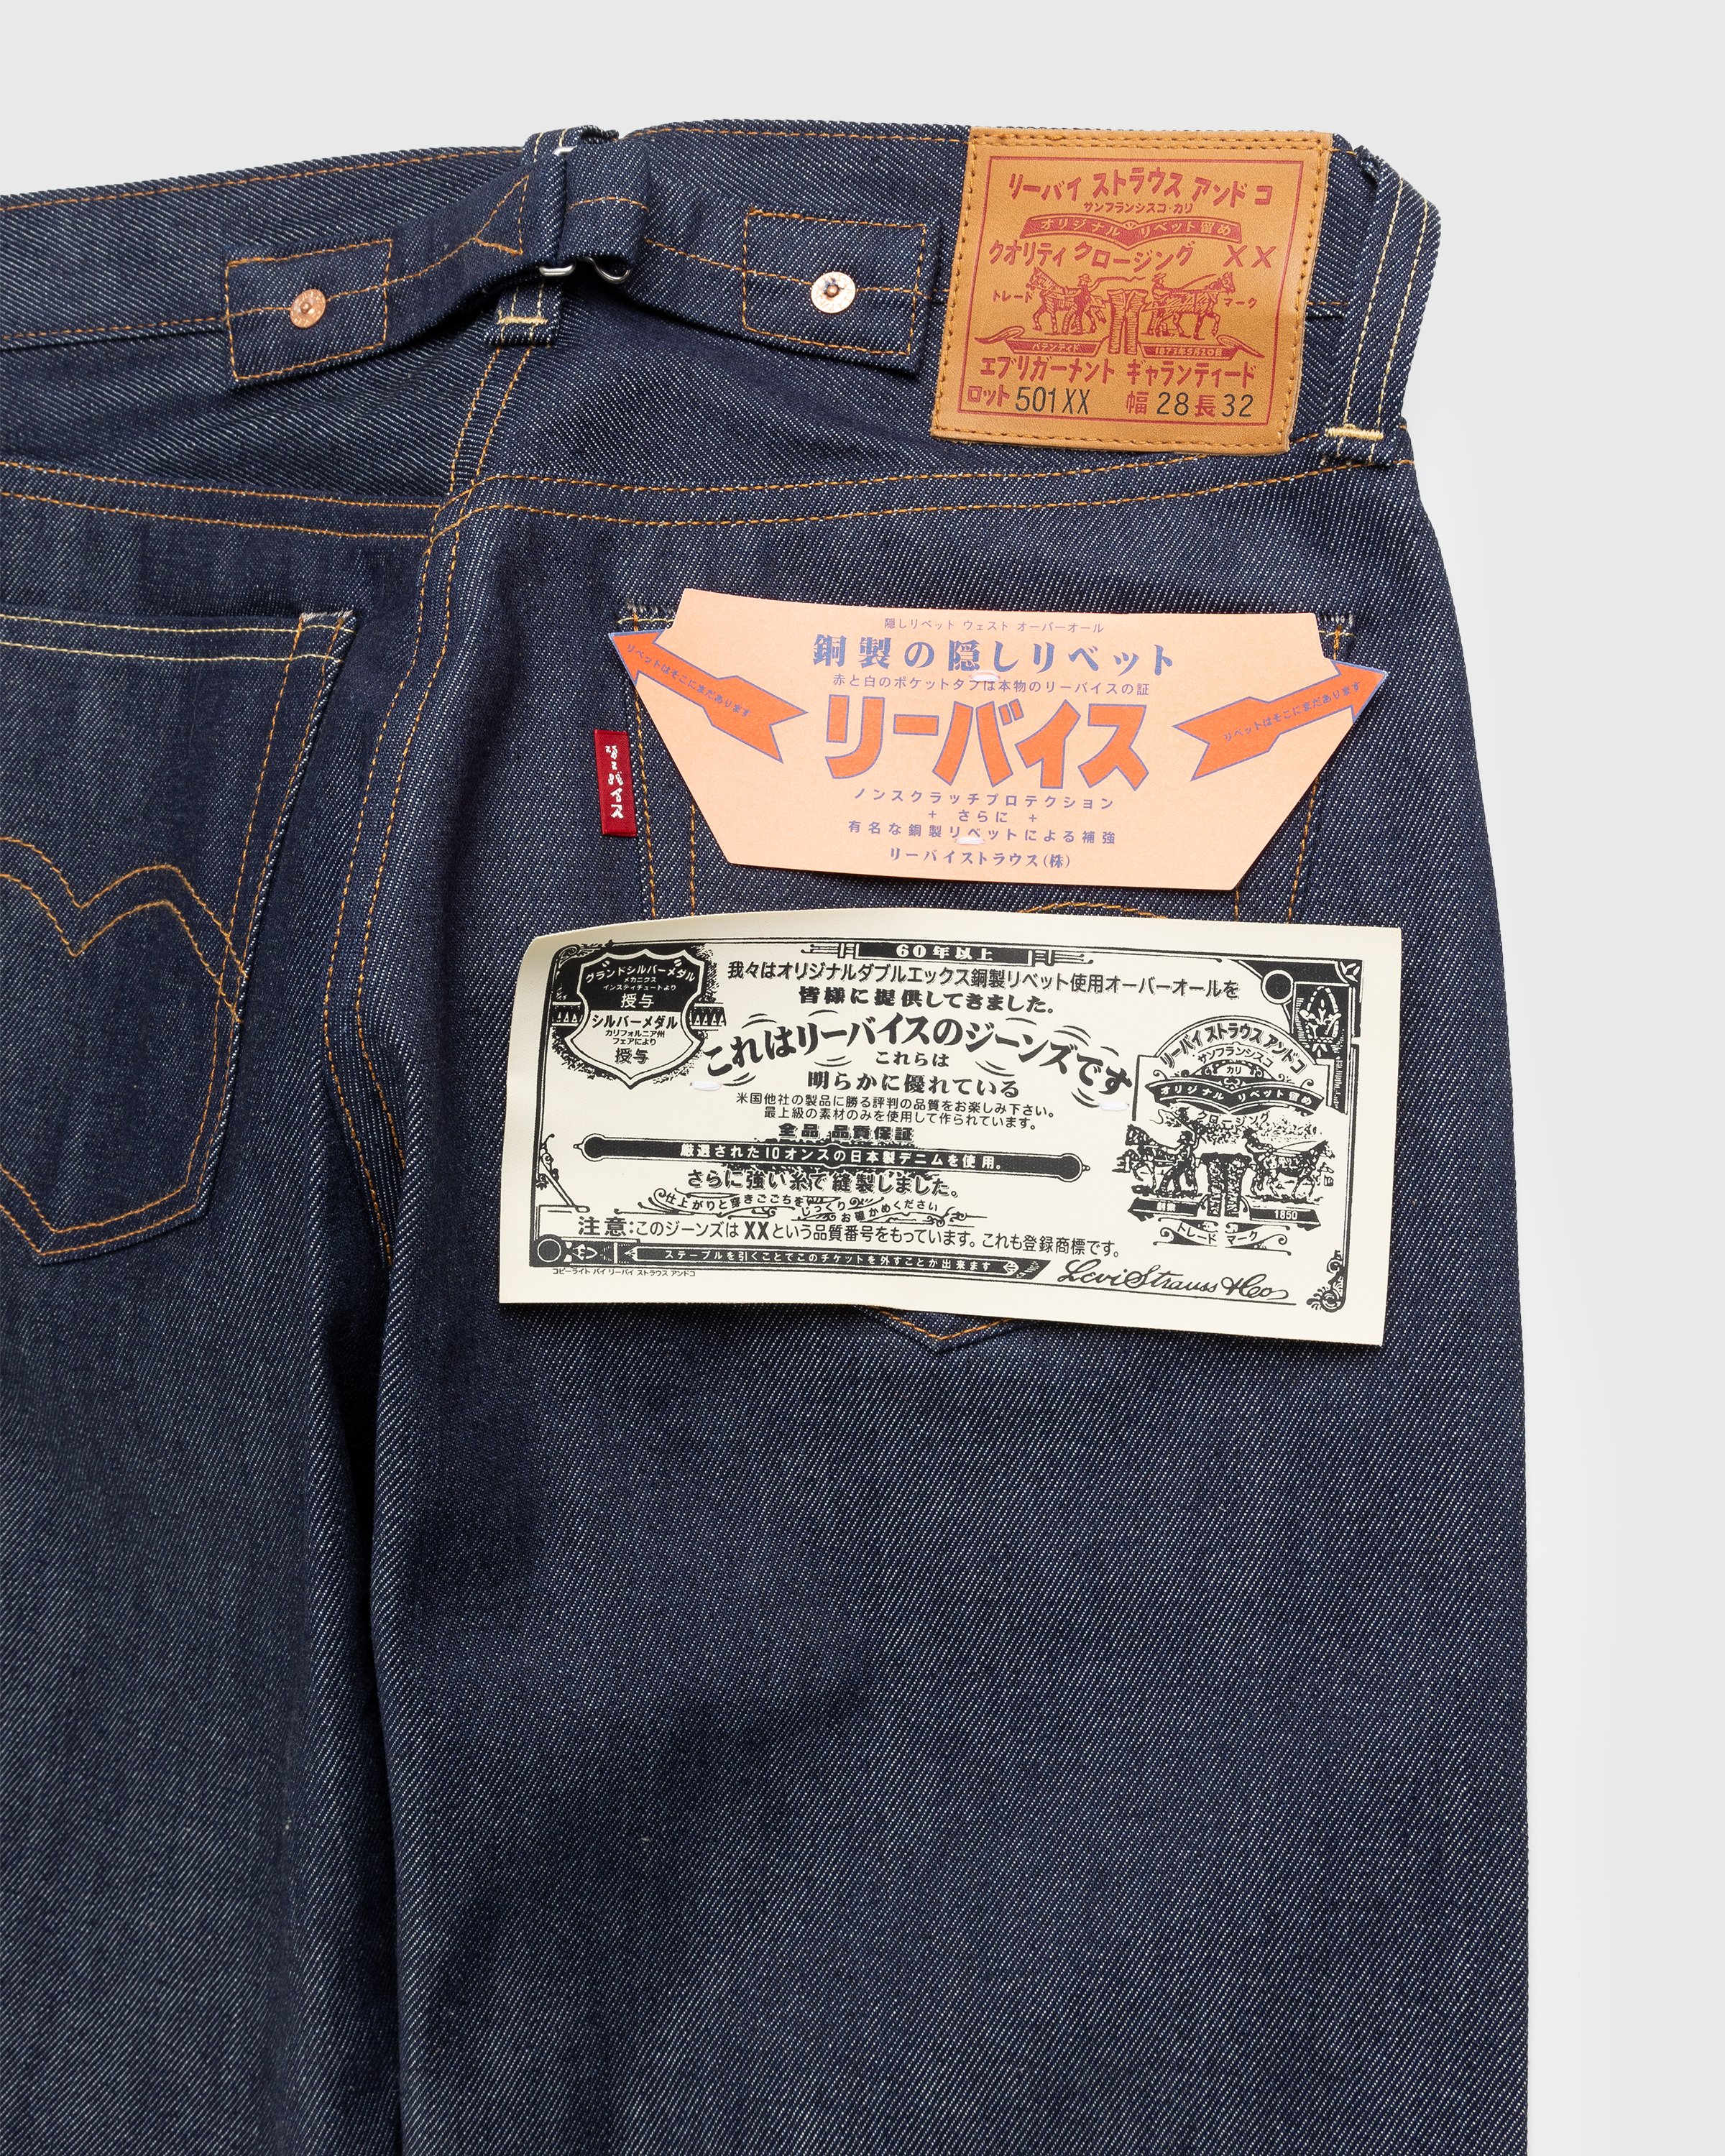 Levi's - 1937 “Japan” 501 Dark Indigo - Clothing - Blue - Image 7